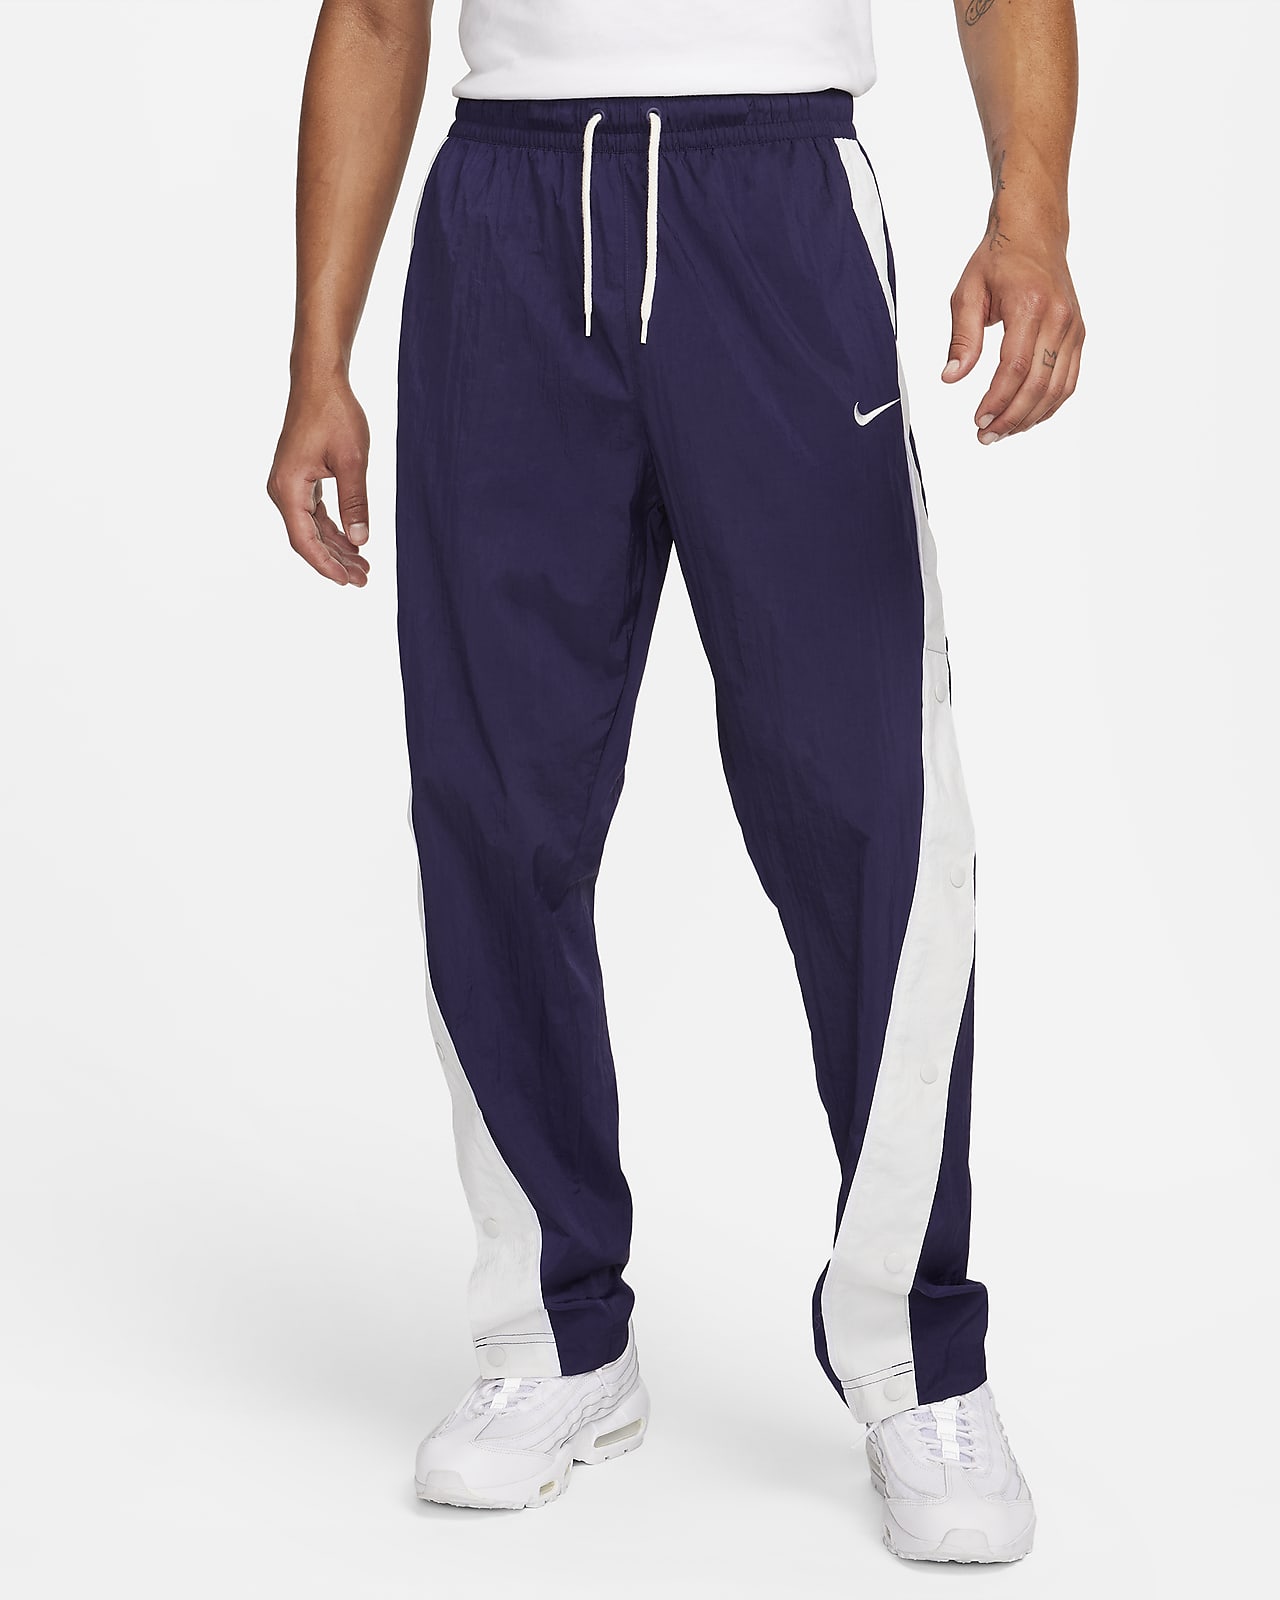 Nike Men's Woven Basketball Pants